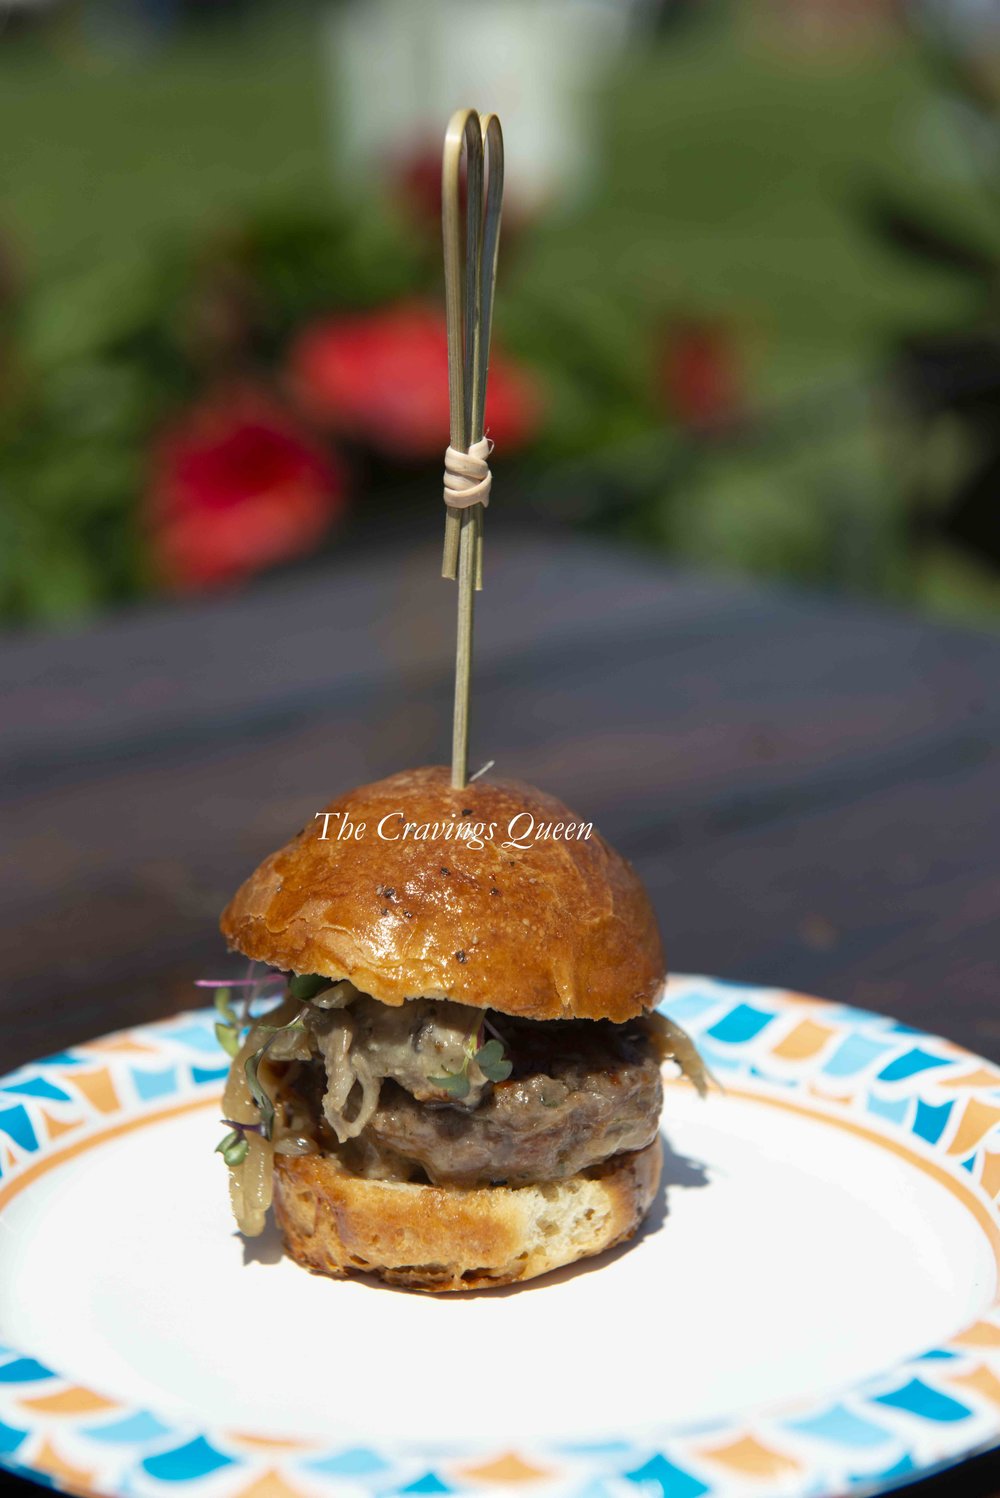 Sage Kitchen Virginia Beach - We Created a Muenster Burger